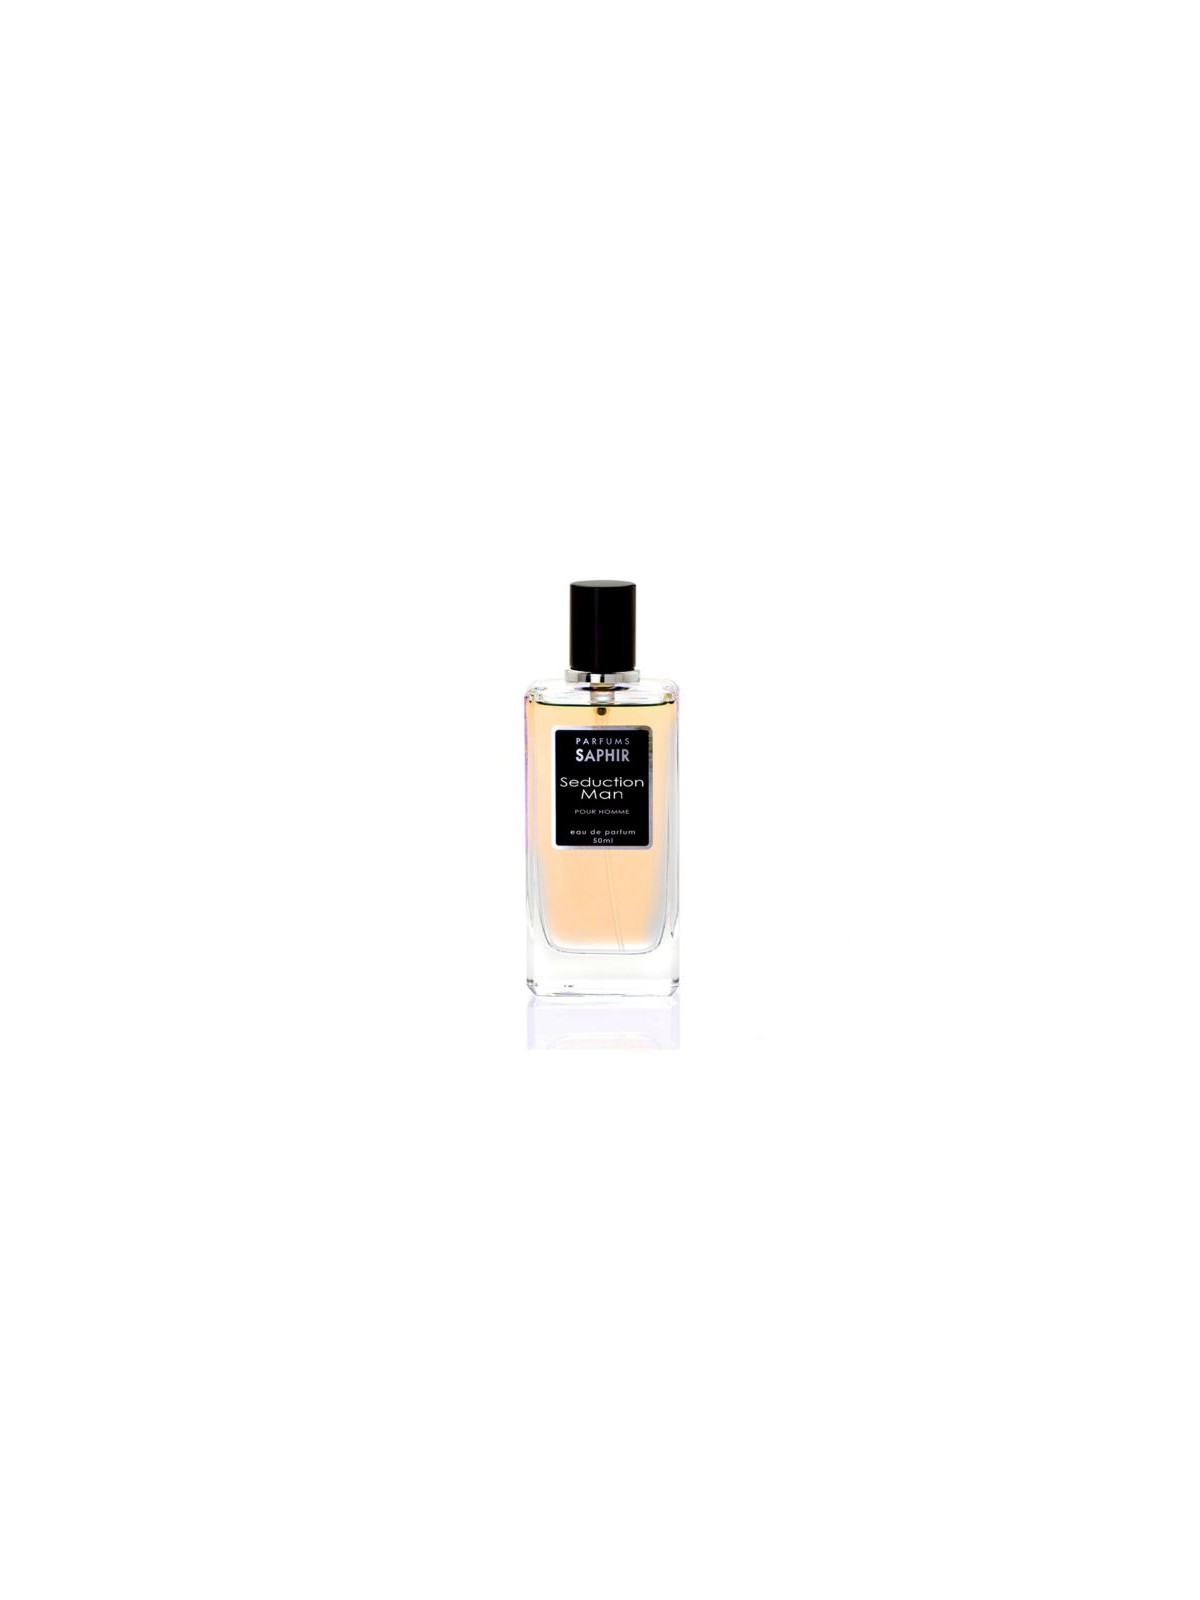 Comprar Perfume Saphir Seduction Man 50ml en Perfumes para hombre por sólo 4,95 € o un precio específico de 4,95 € en Thalie Care